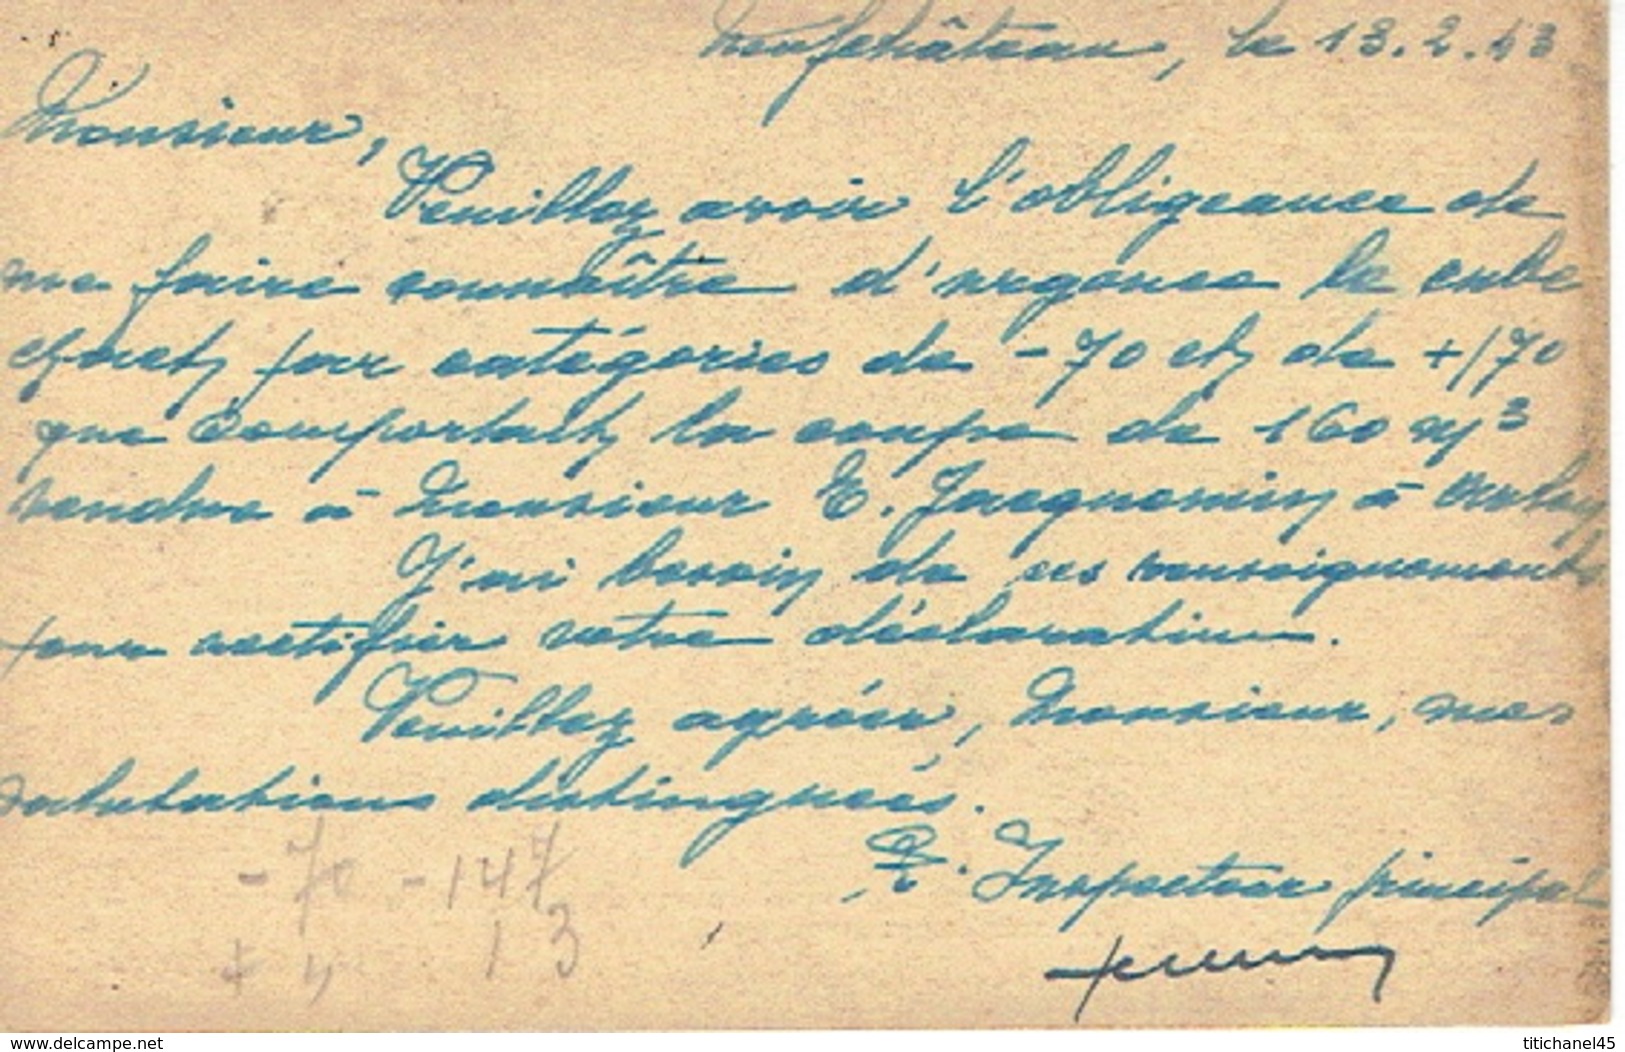 1943 Carte De Service - MINISTERE DE L'AGRICULTURE - INSPECTION FORESTIERE DE NEUFCHATEAU Vers LEGLISE - Franchise